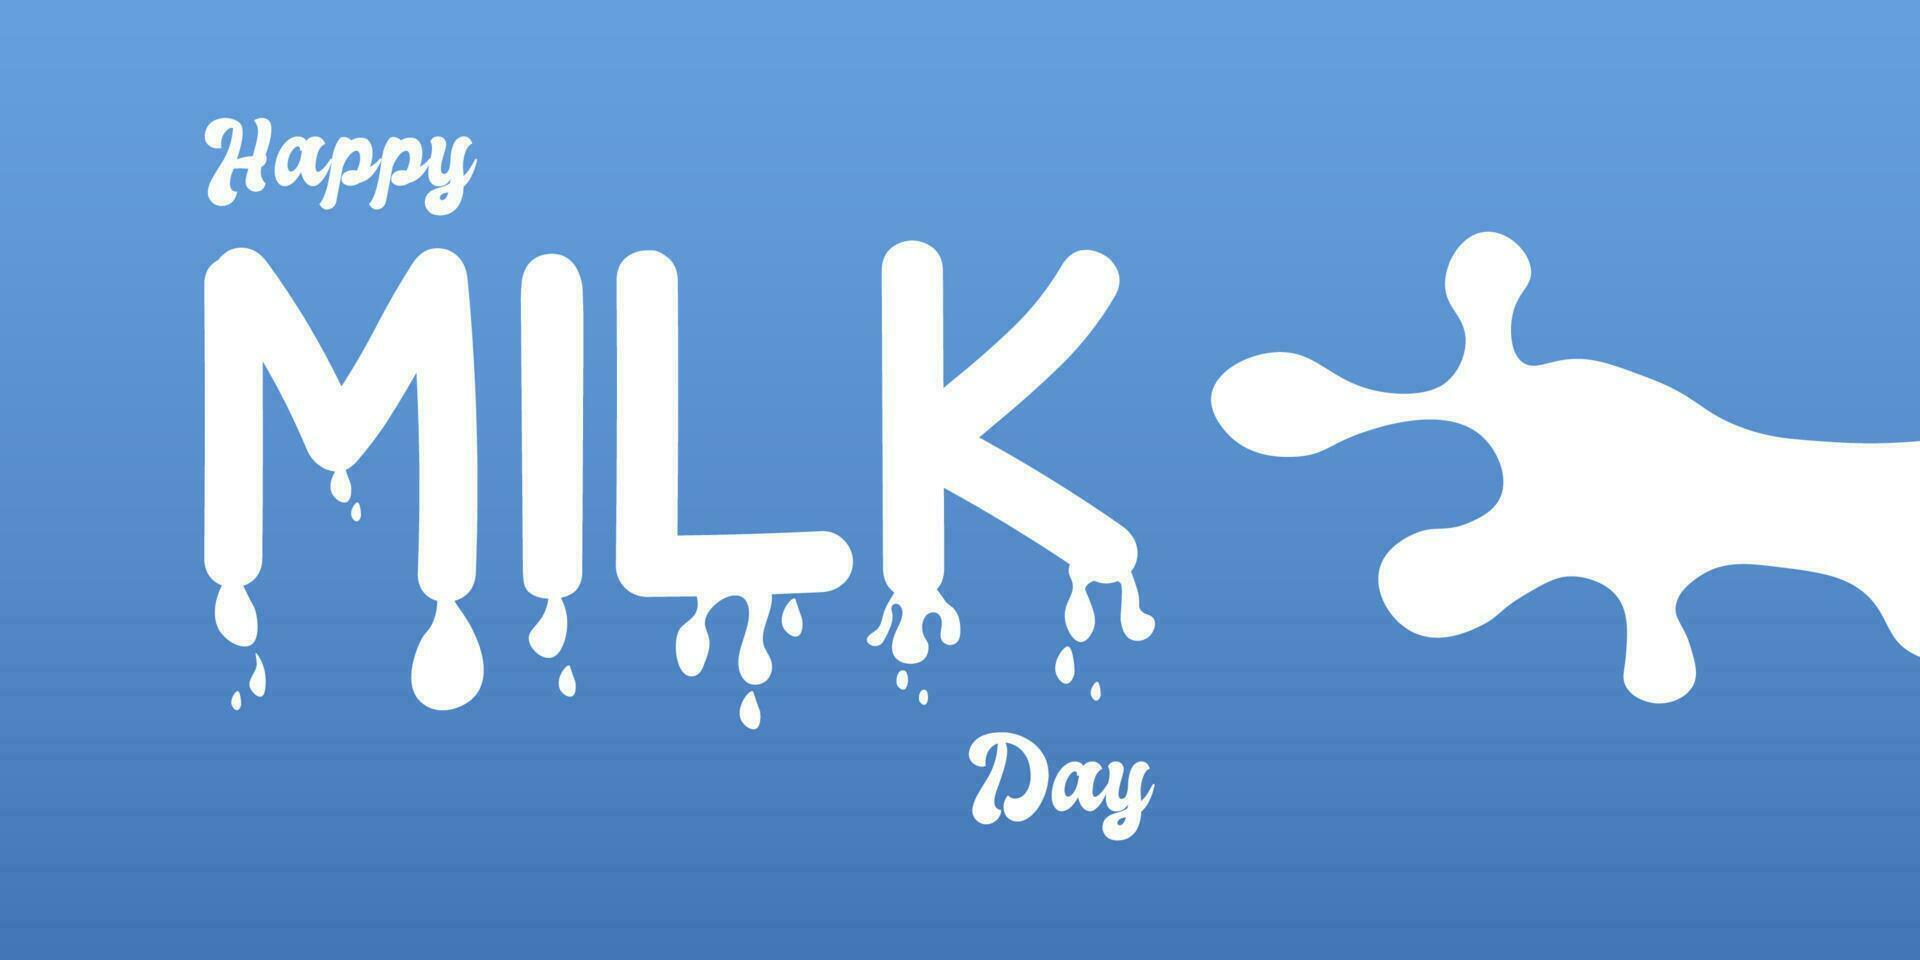 värld mjölk dag, begrepp för produkt av mejeri mjölk med vatten släppa stil, vektor illustration och design.